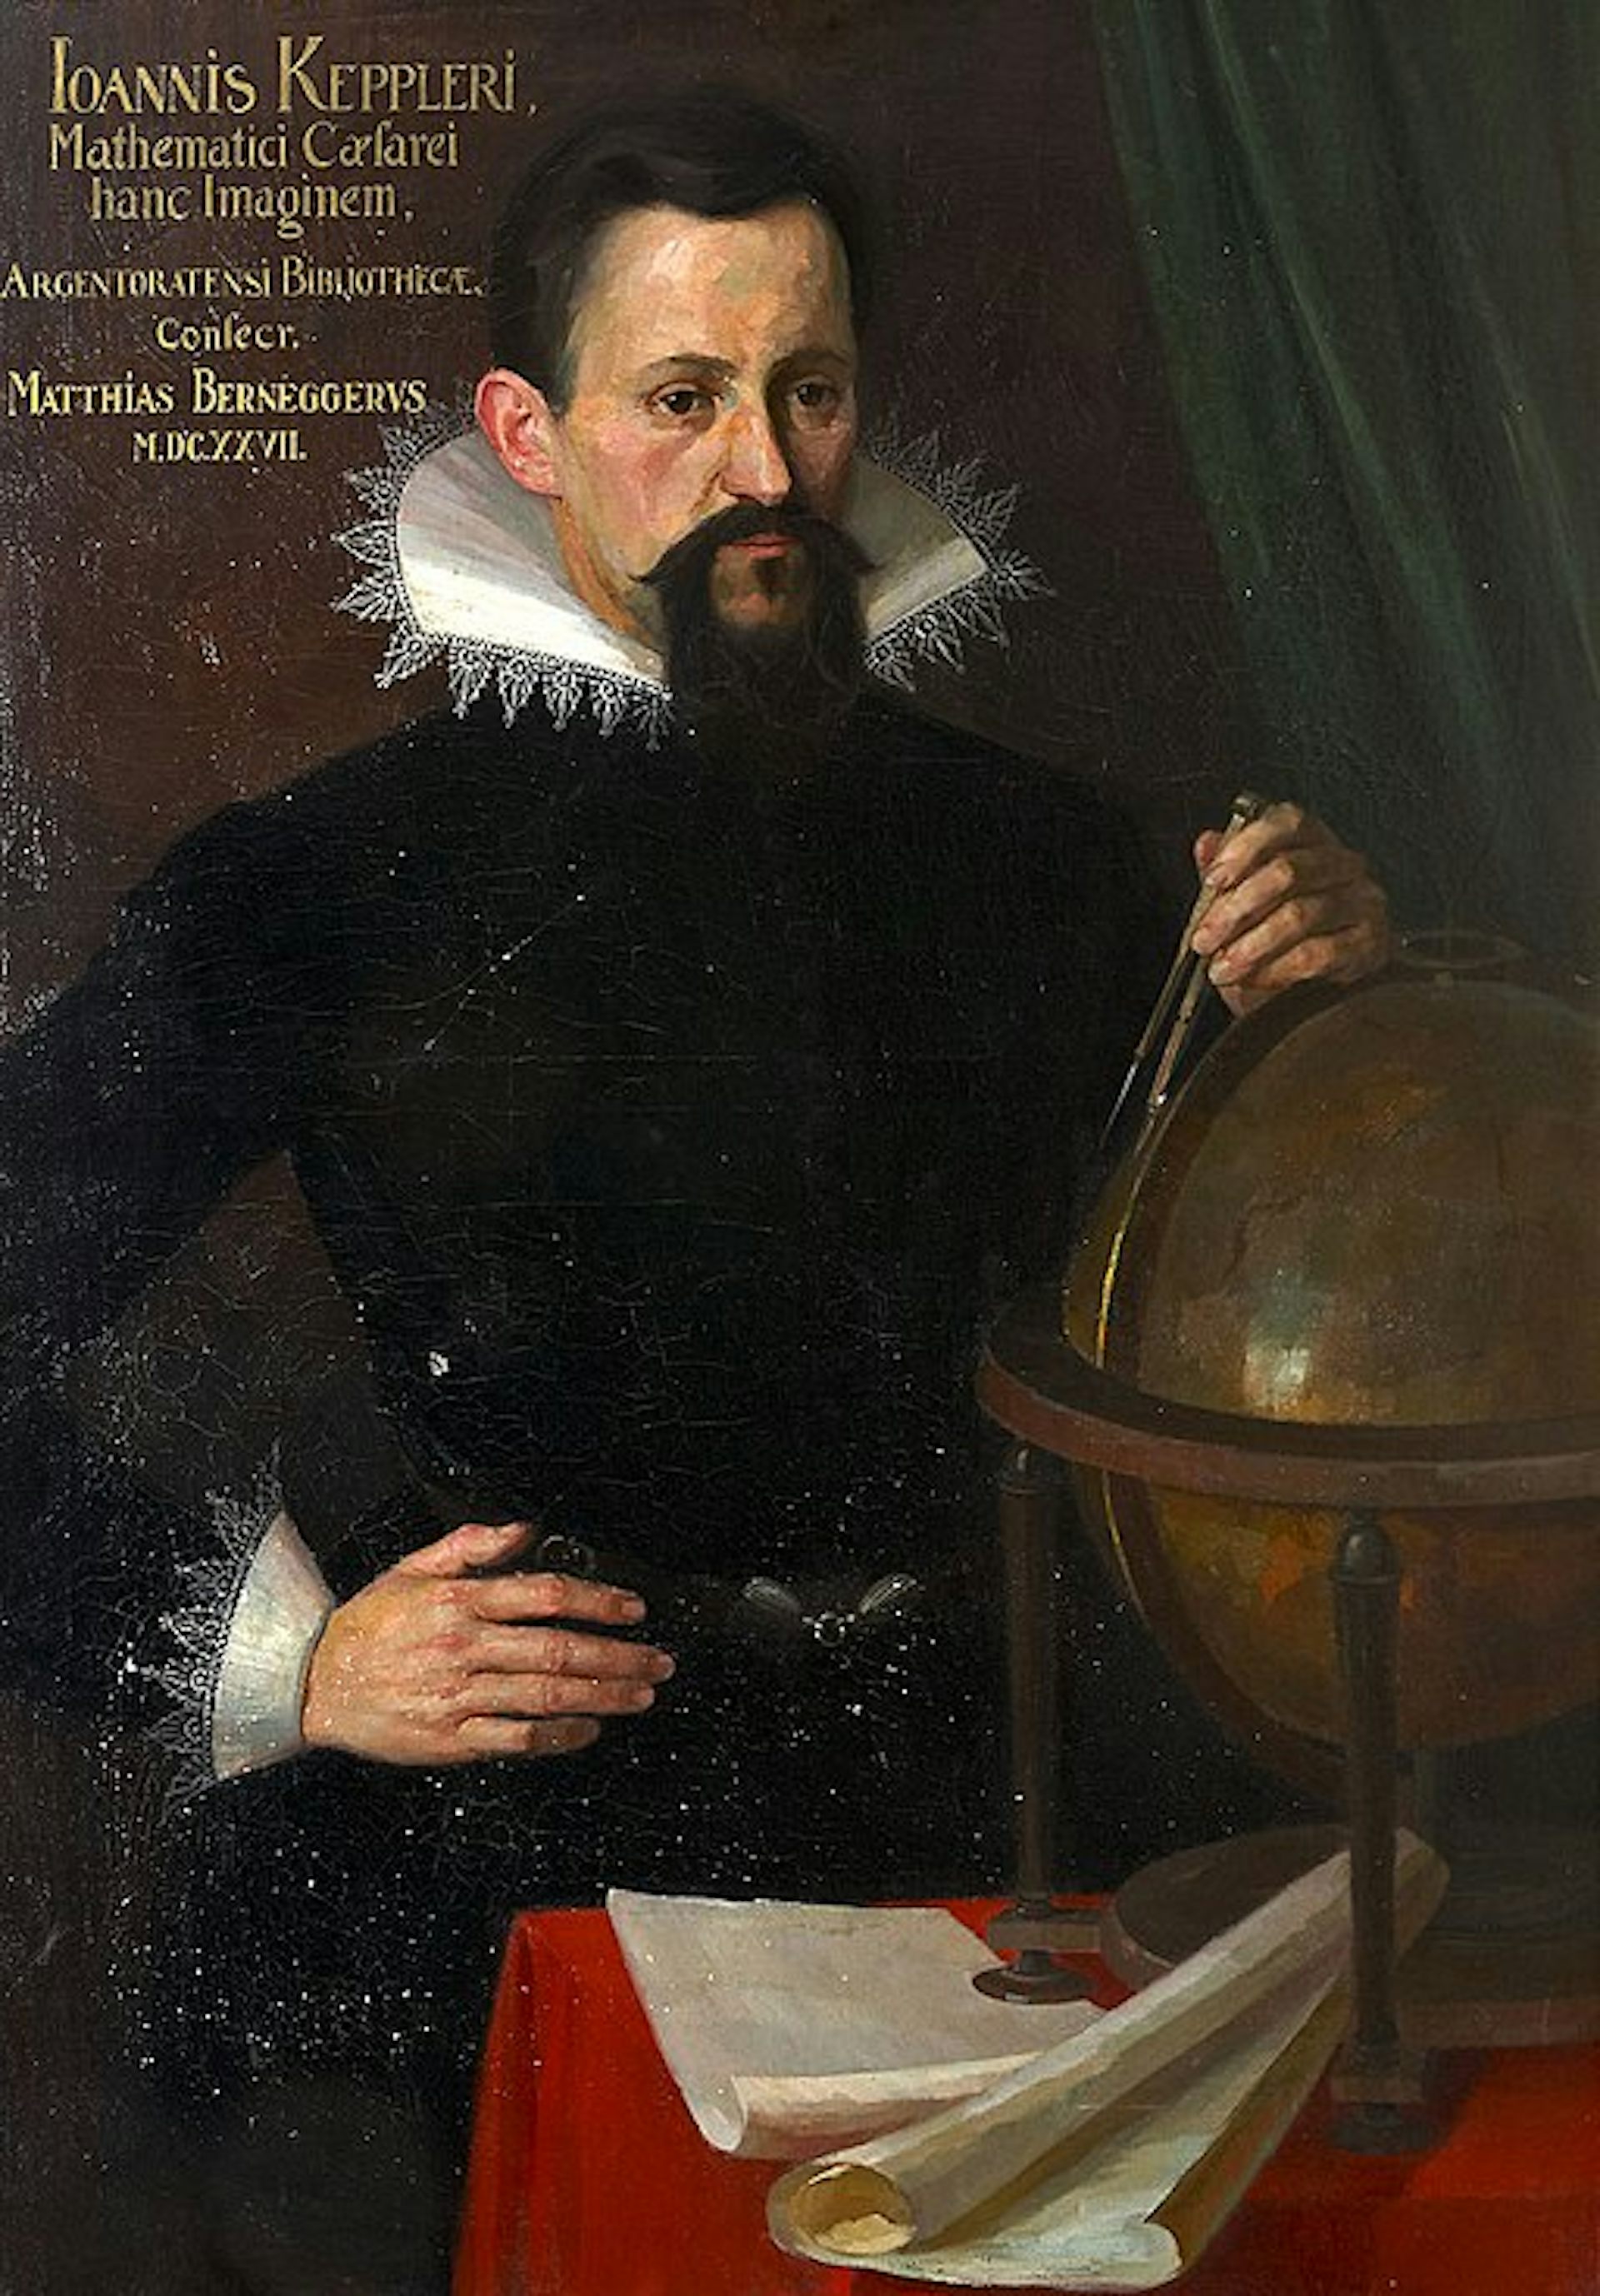 Ein Mann mit dunklem Haar und Bart, der dunkle Kleidung mit einem kunstvollen Kragen trägt und eine Hand auf seiner Hüfte und eine andere auf einem Globus ruht.